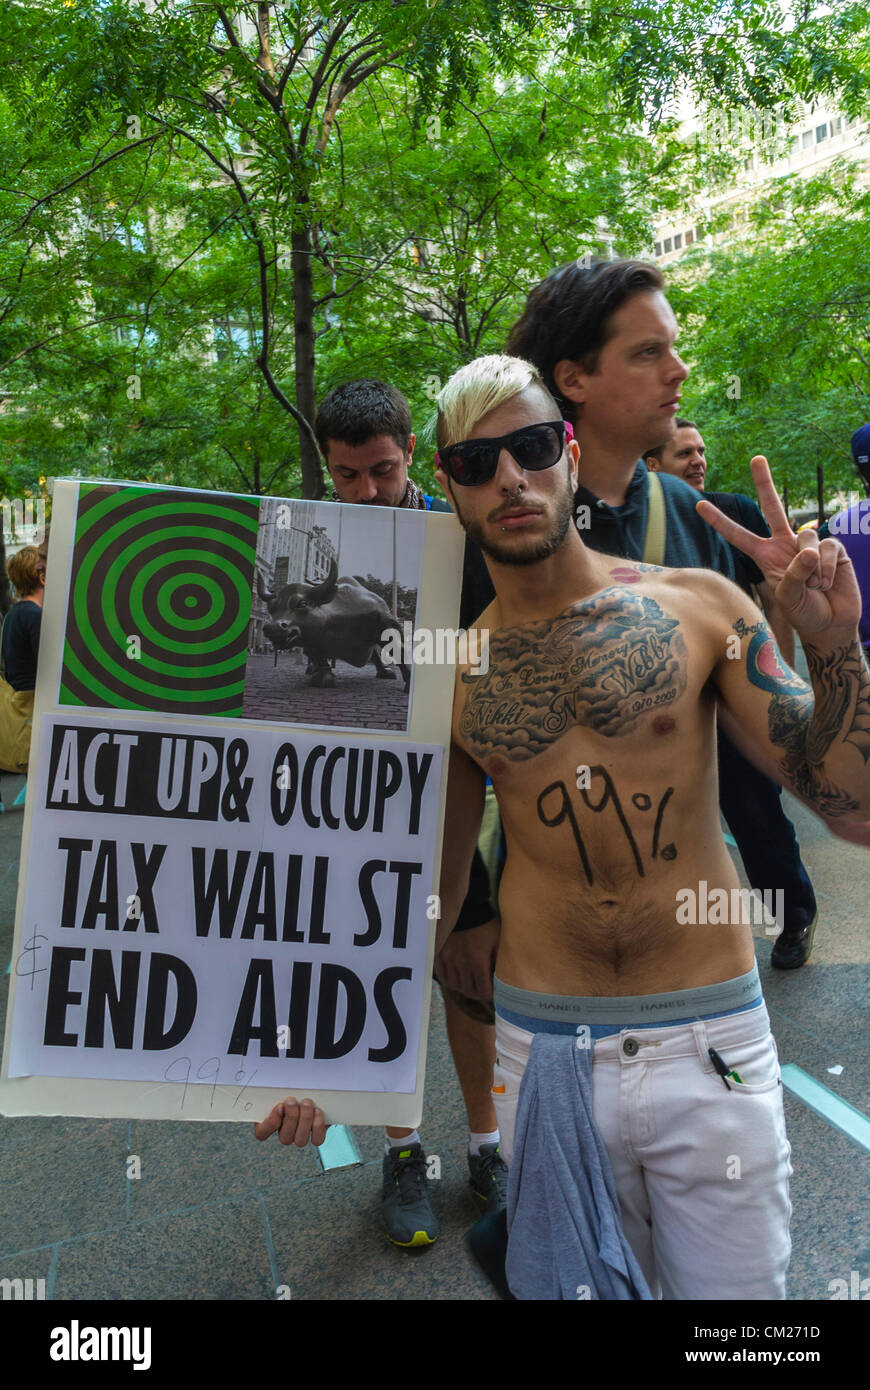 New York, NY, États-Unis, manifestants brandissant des pancartes de protestation, protestant, "Occupy Wall Street", "Act Up New York" activiste du vih SIDA, affiche Act Up, participation politique des jeunes, démonstration des adolescents Banque D'Images